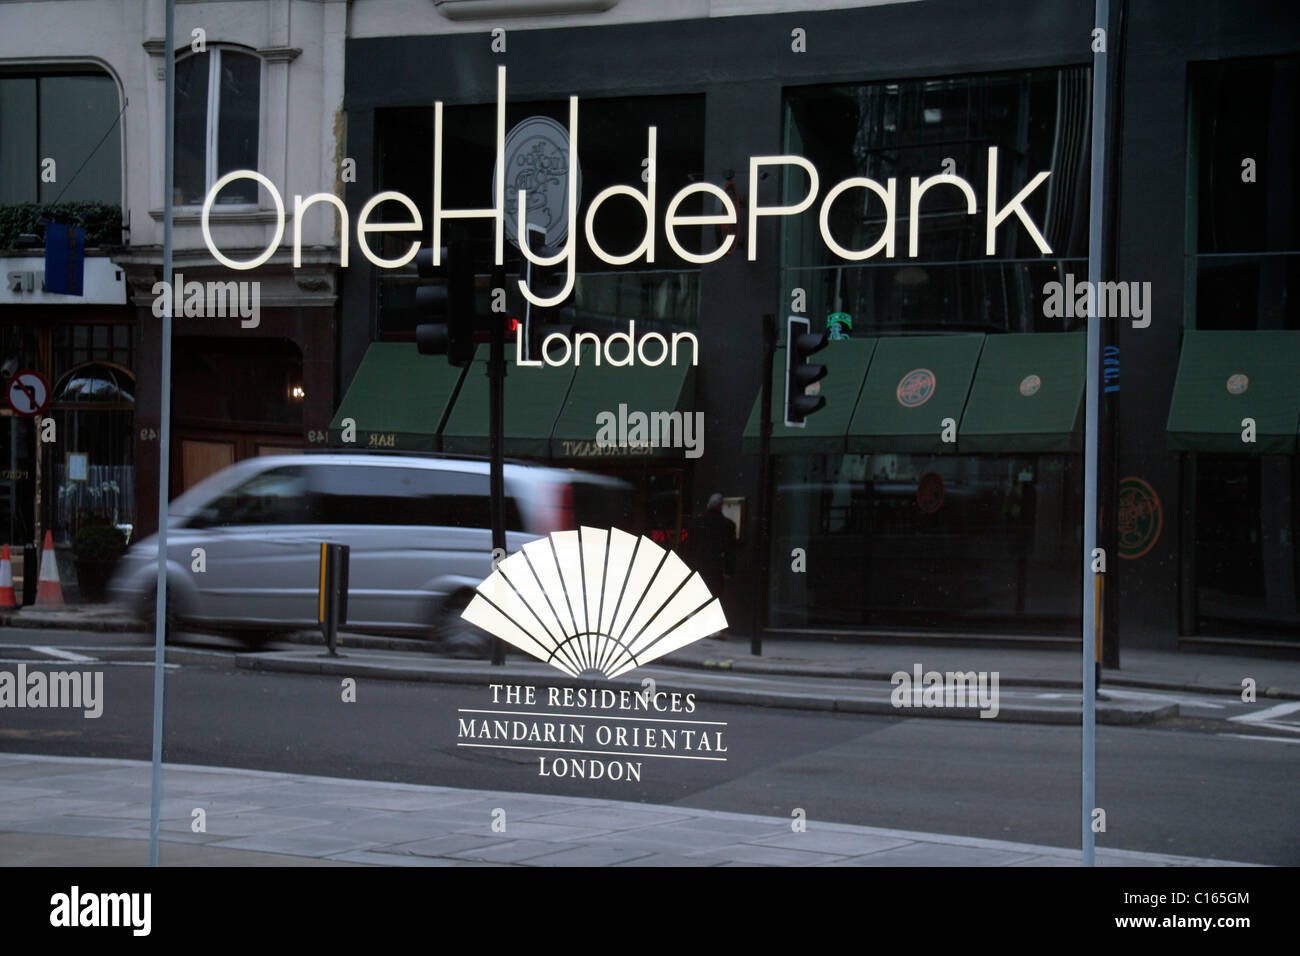 L'Hyde Park Londres un logo, Knightsbridge, London, UK. Banque D'Images